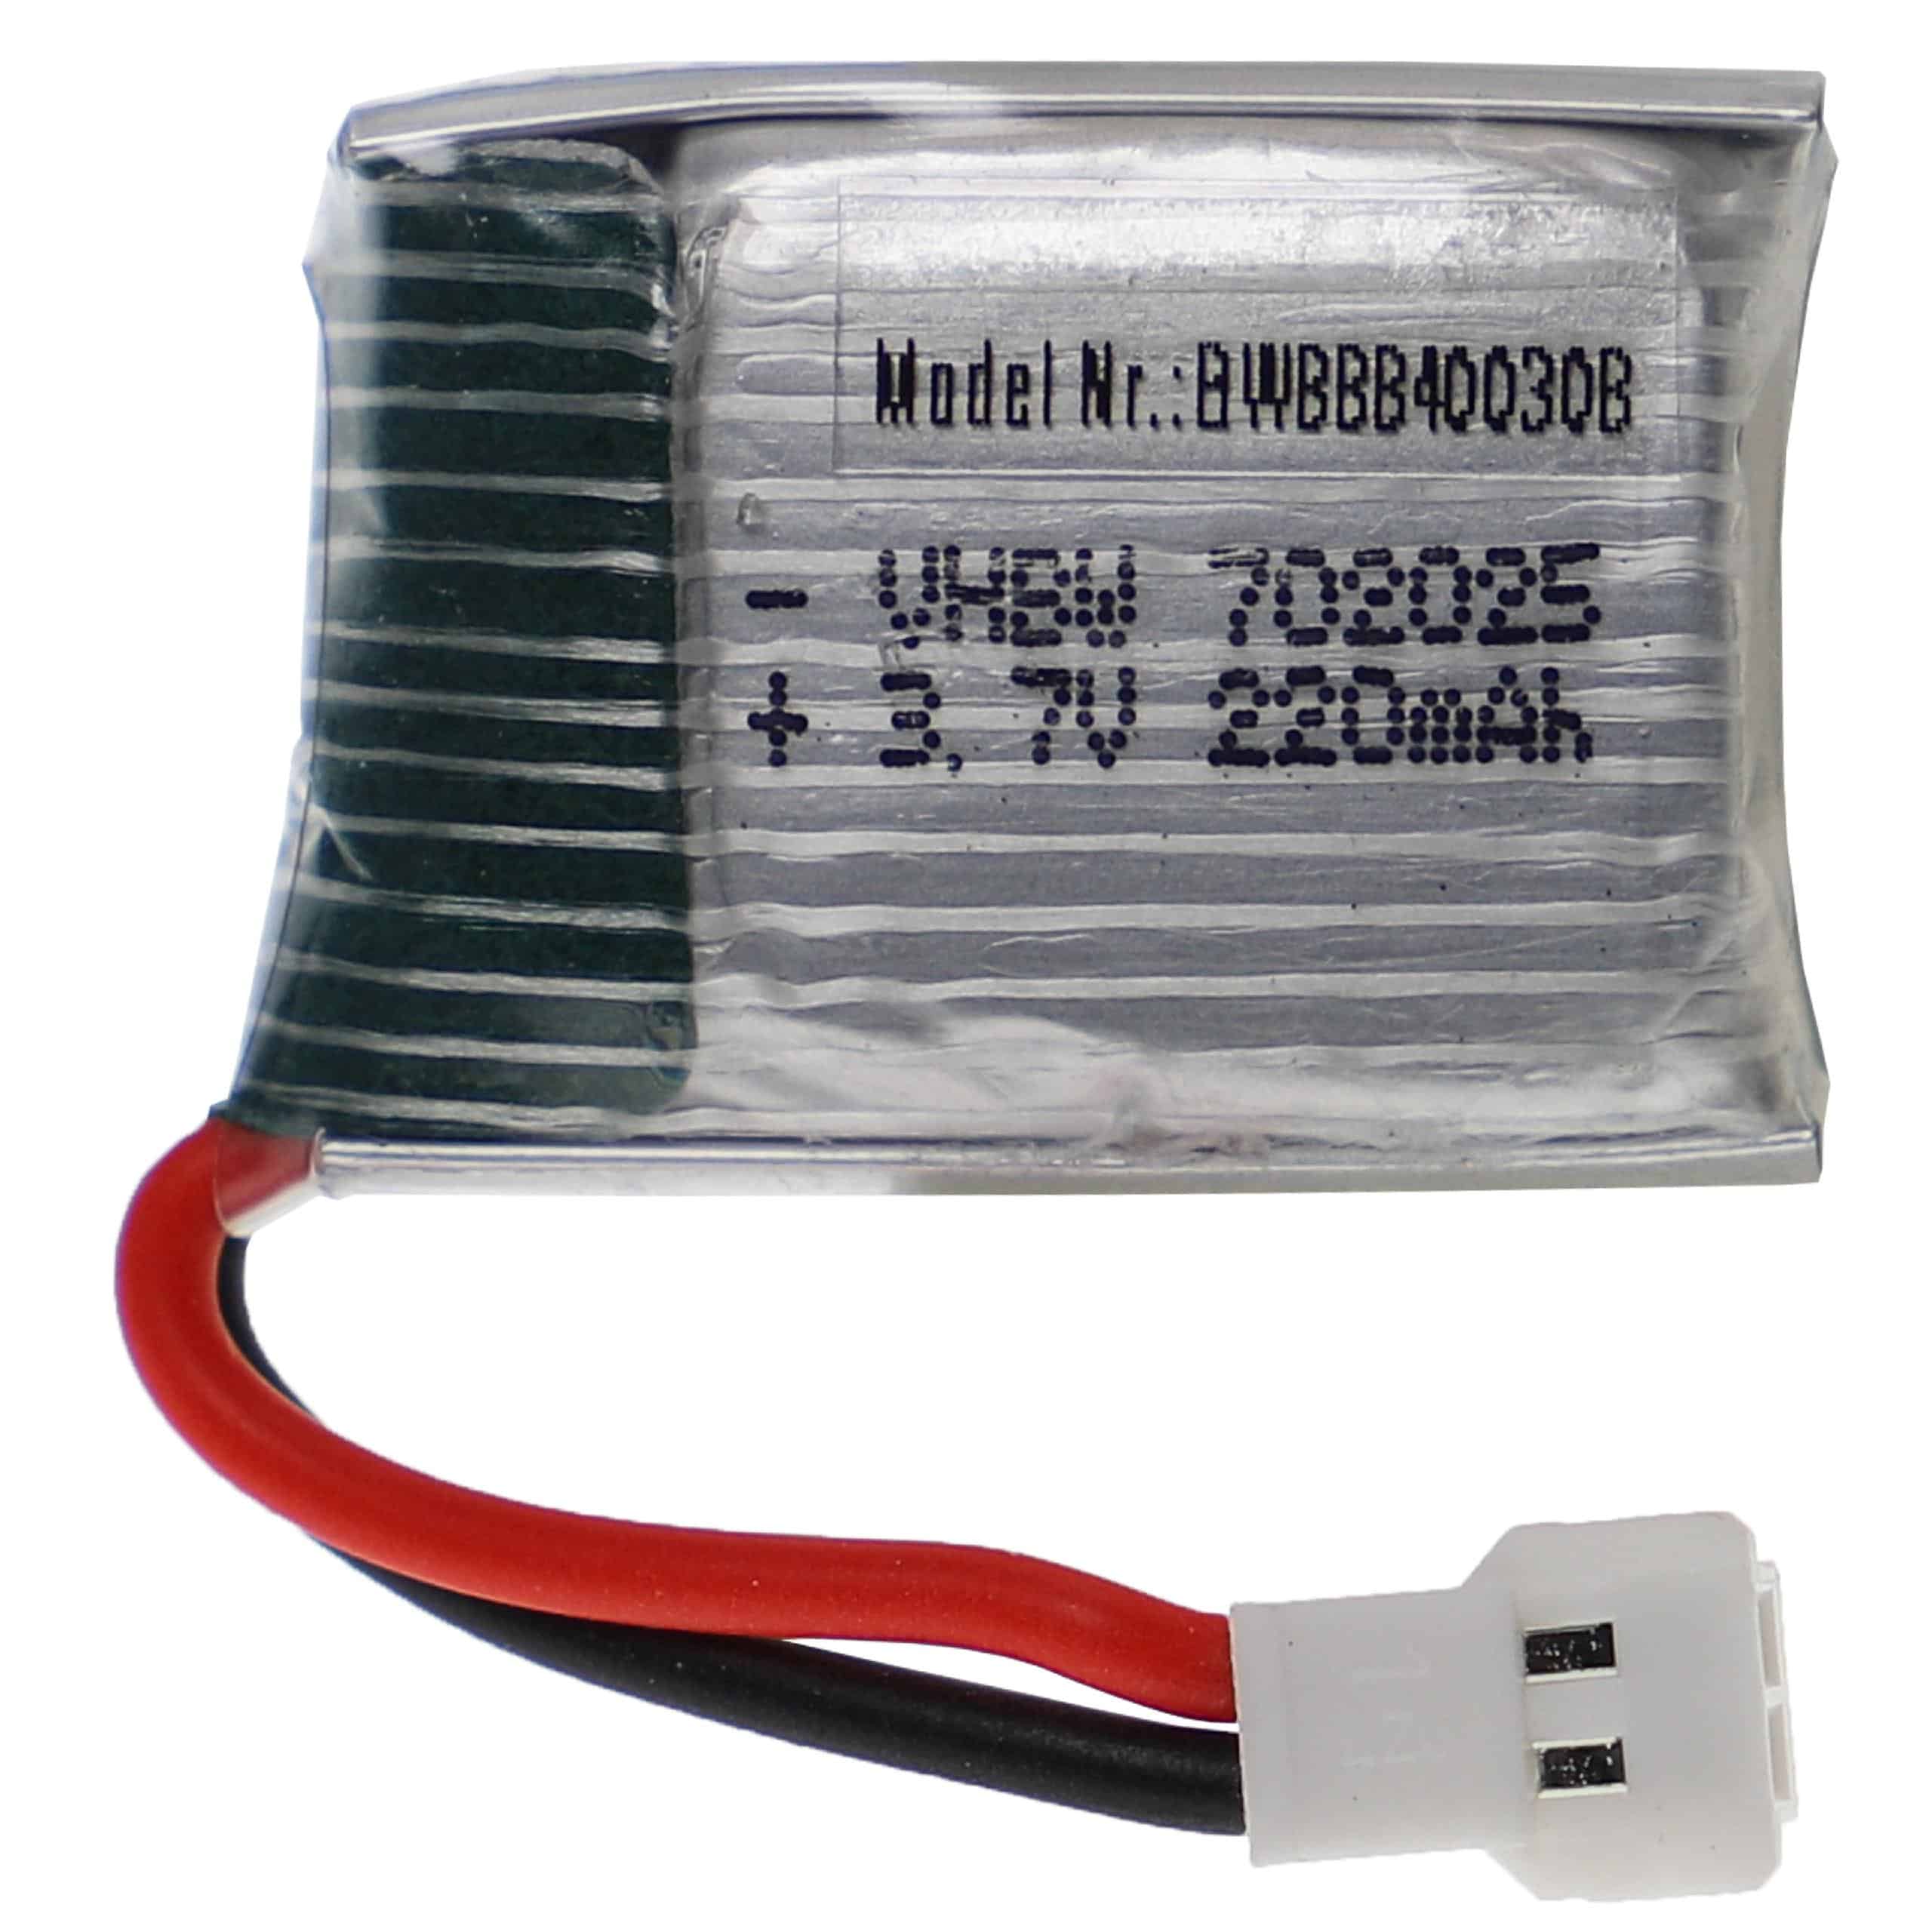 Batería para dispositivos modelismo - 220 mAh 3,7 V Li-poli, XH 2.54 2P